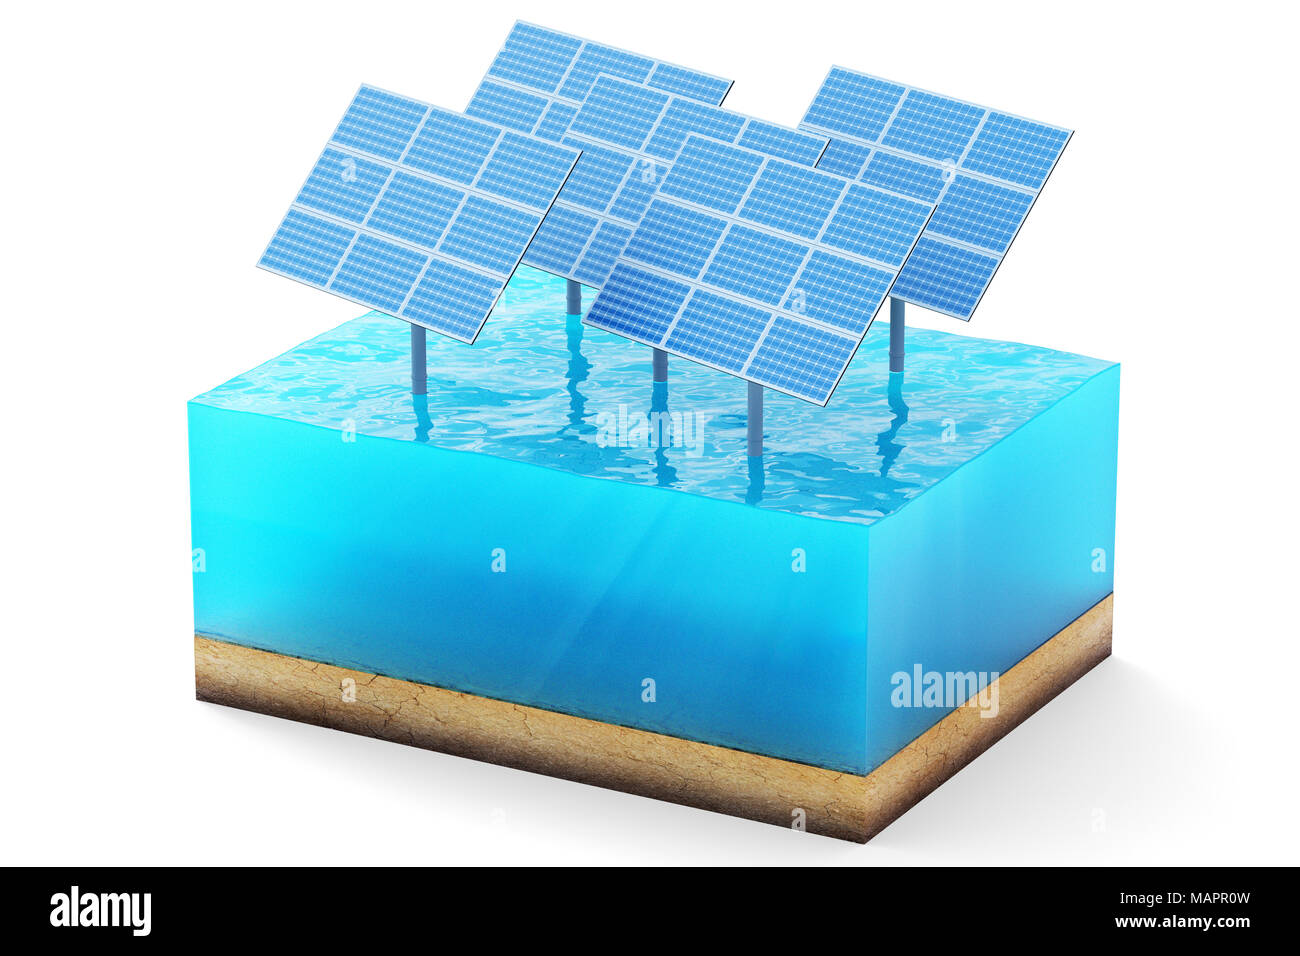 Le rendu 3D de la section transversale du cube d'eau isolé sur fond blanc. Panneaux solaires bleu dans la mer pour produire de l'énergie propre Banque D'Images